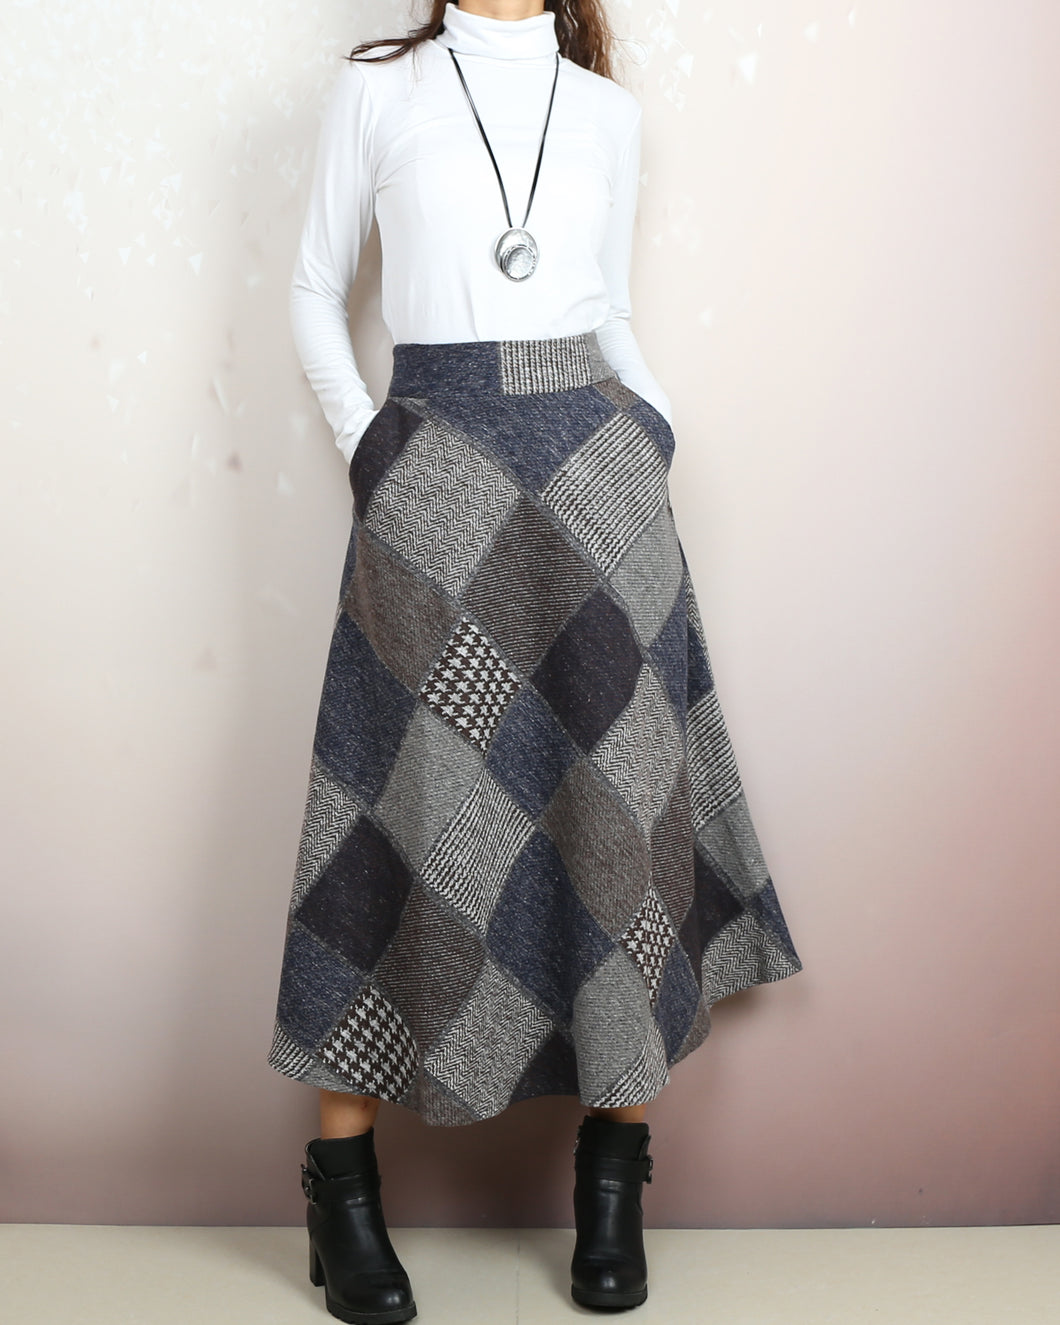 Wool skirt, Winter skirt, black skirt, long wool skirt, vintage